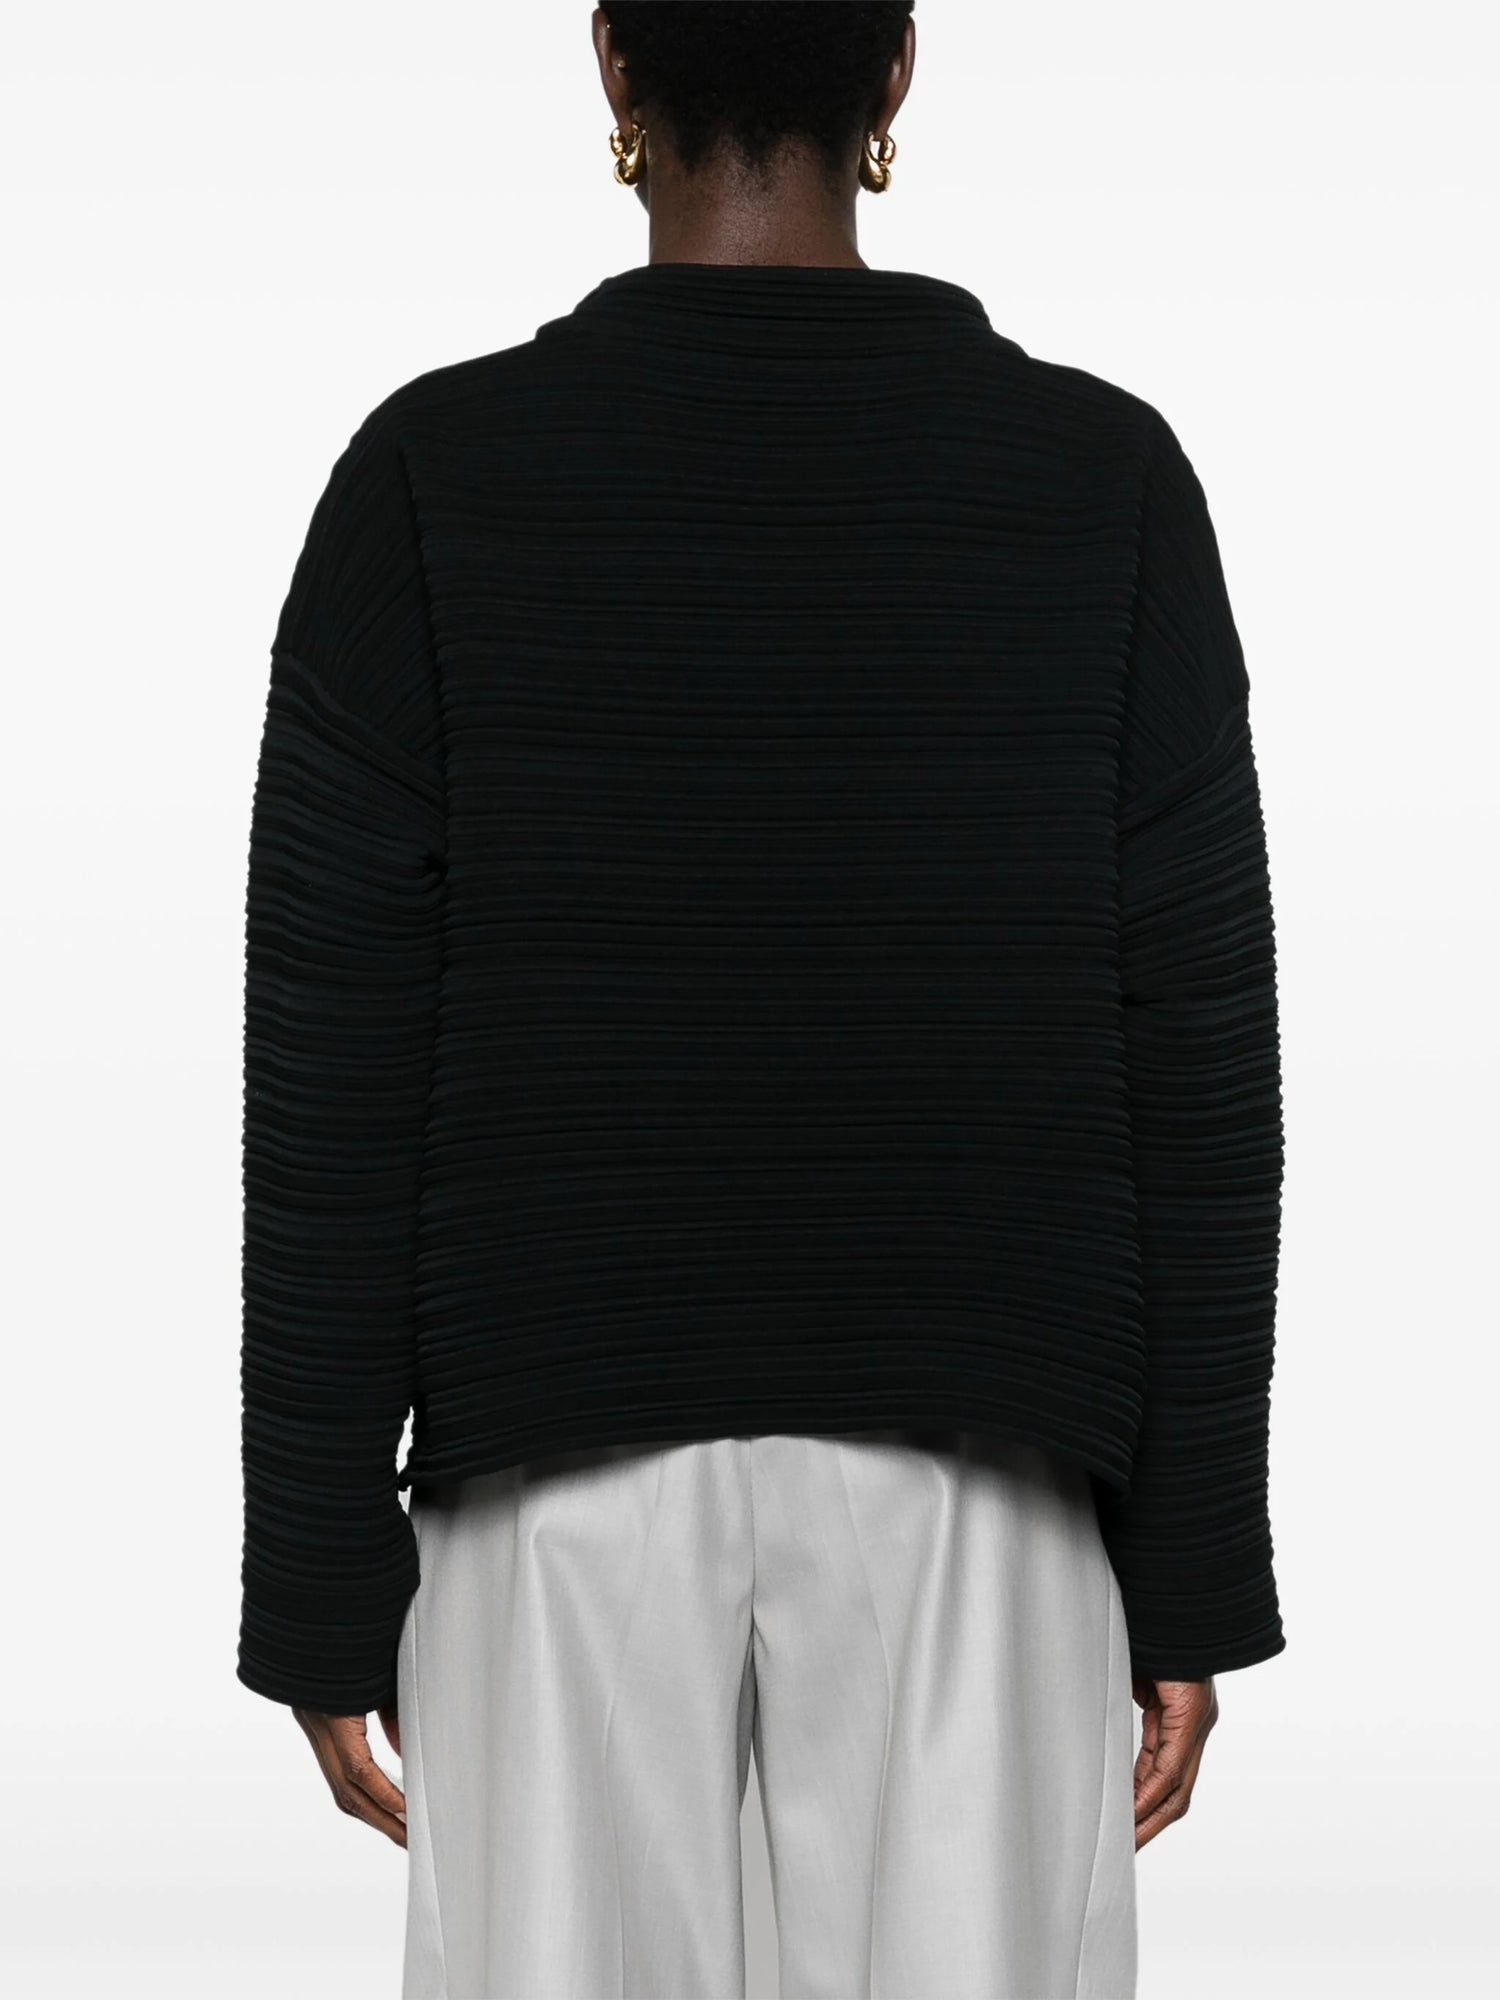 Pleated sweater, black